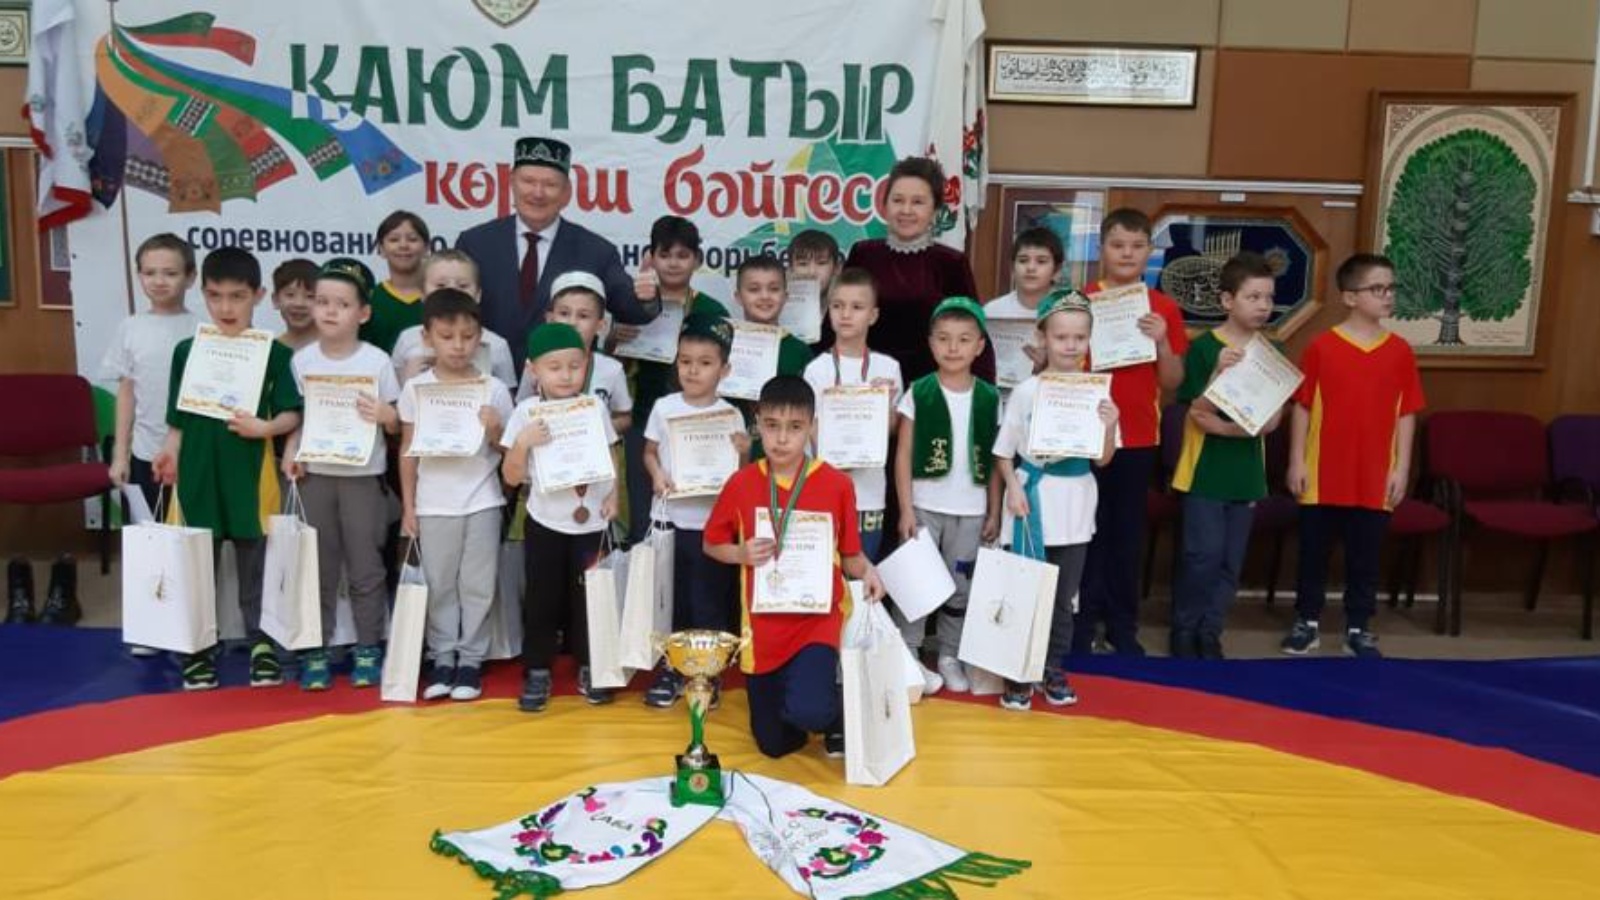 Татарские конкурсы 2024